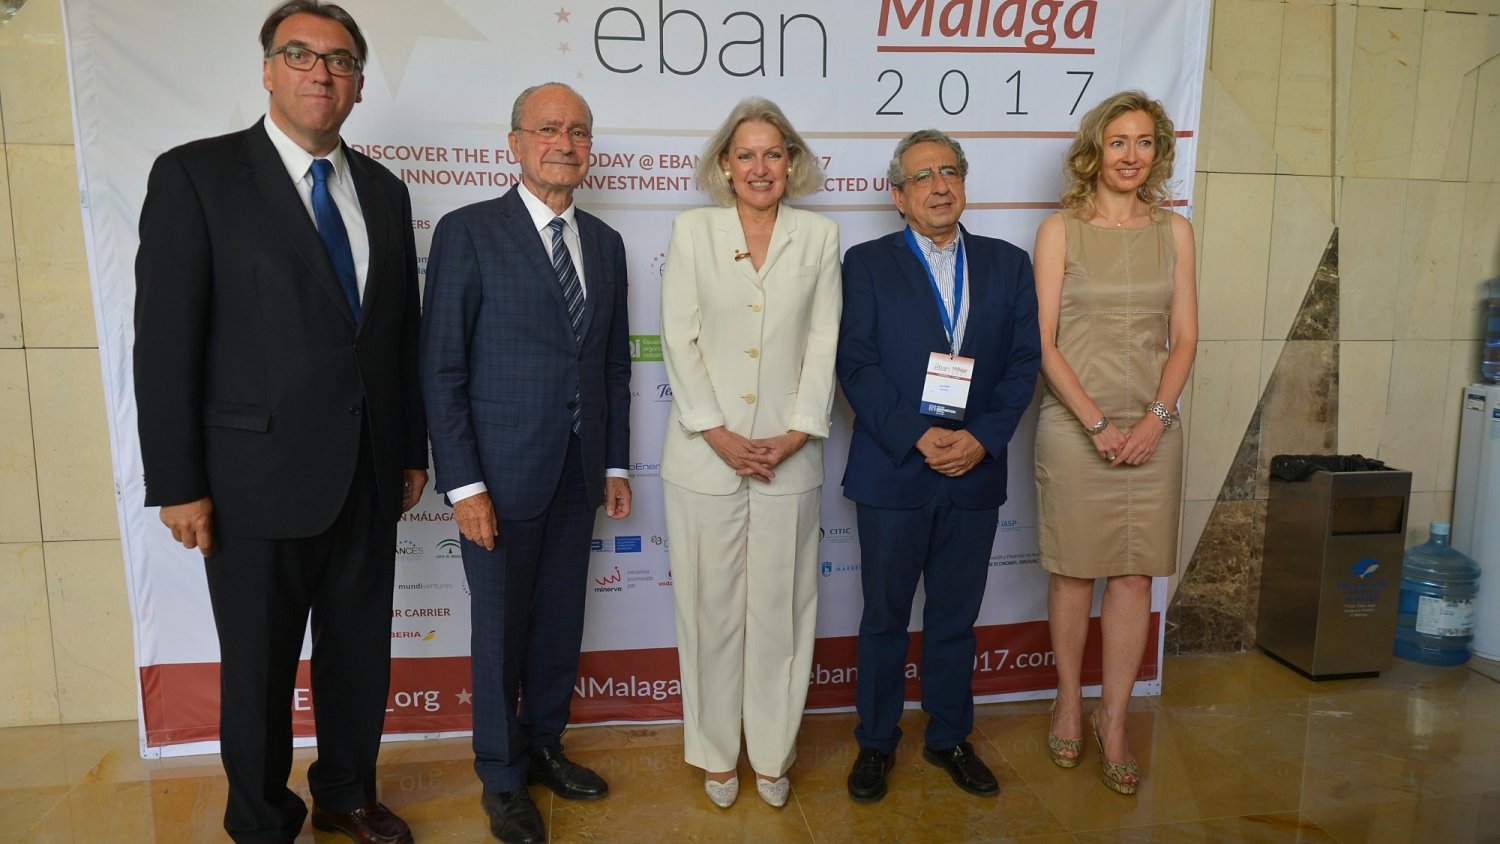 Eban Málaga 2017 Congress analiza las claves de la inversión, el emprendimiento y el papel de los Business Angels